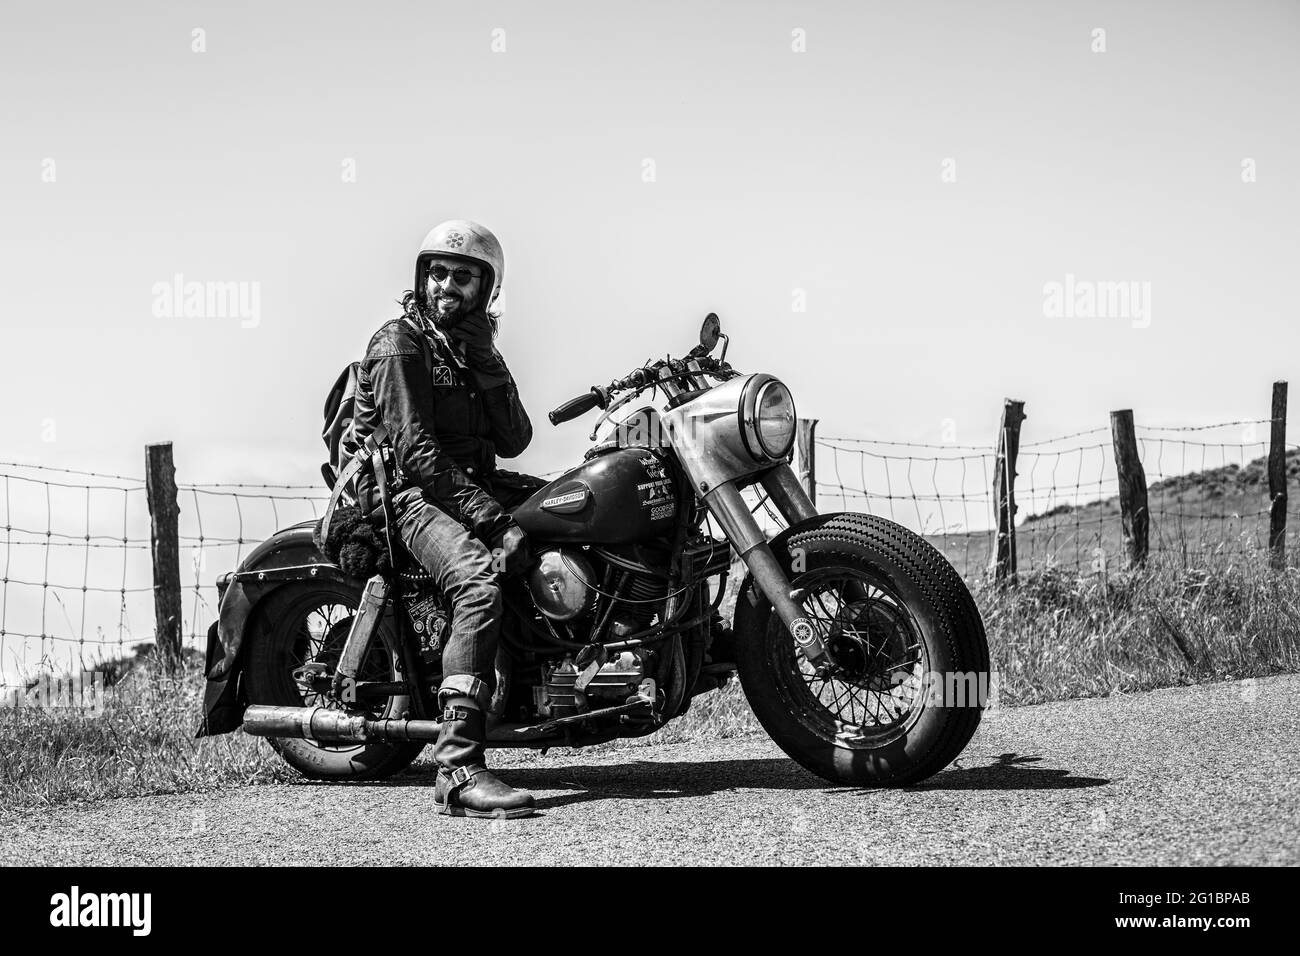 David Borras fondeur d'El Solitario MC et de son Harley Davidson 58 Panhead au festival des roues et des vagues à Biarritz, France. Banque D'Images